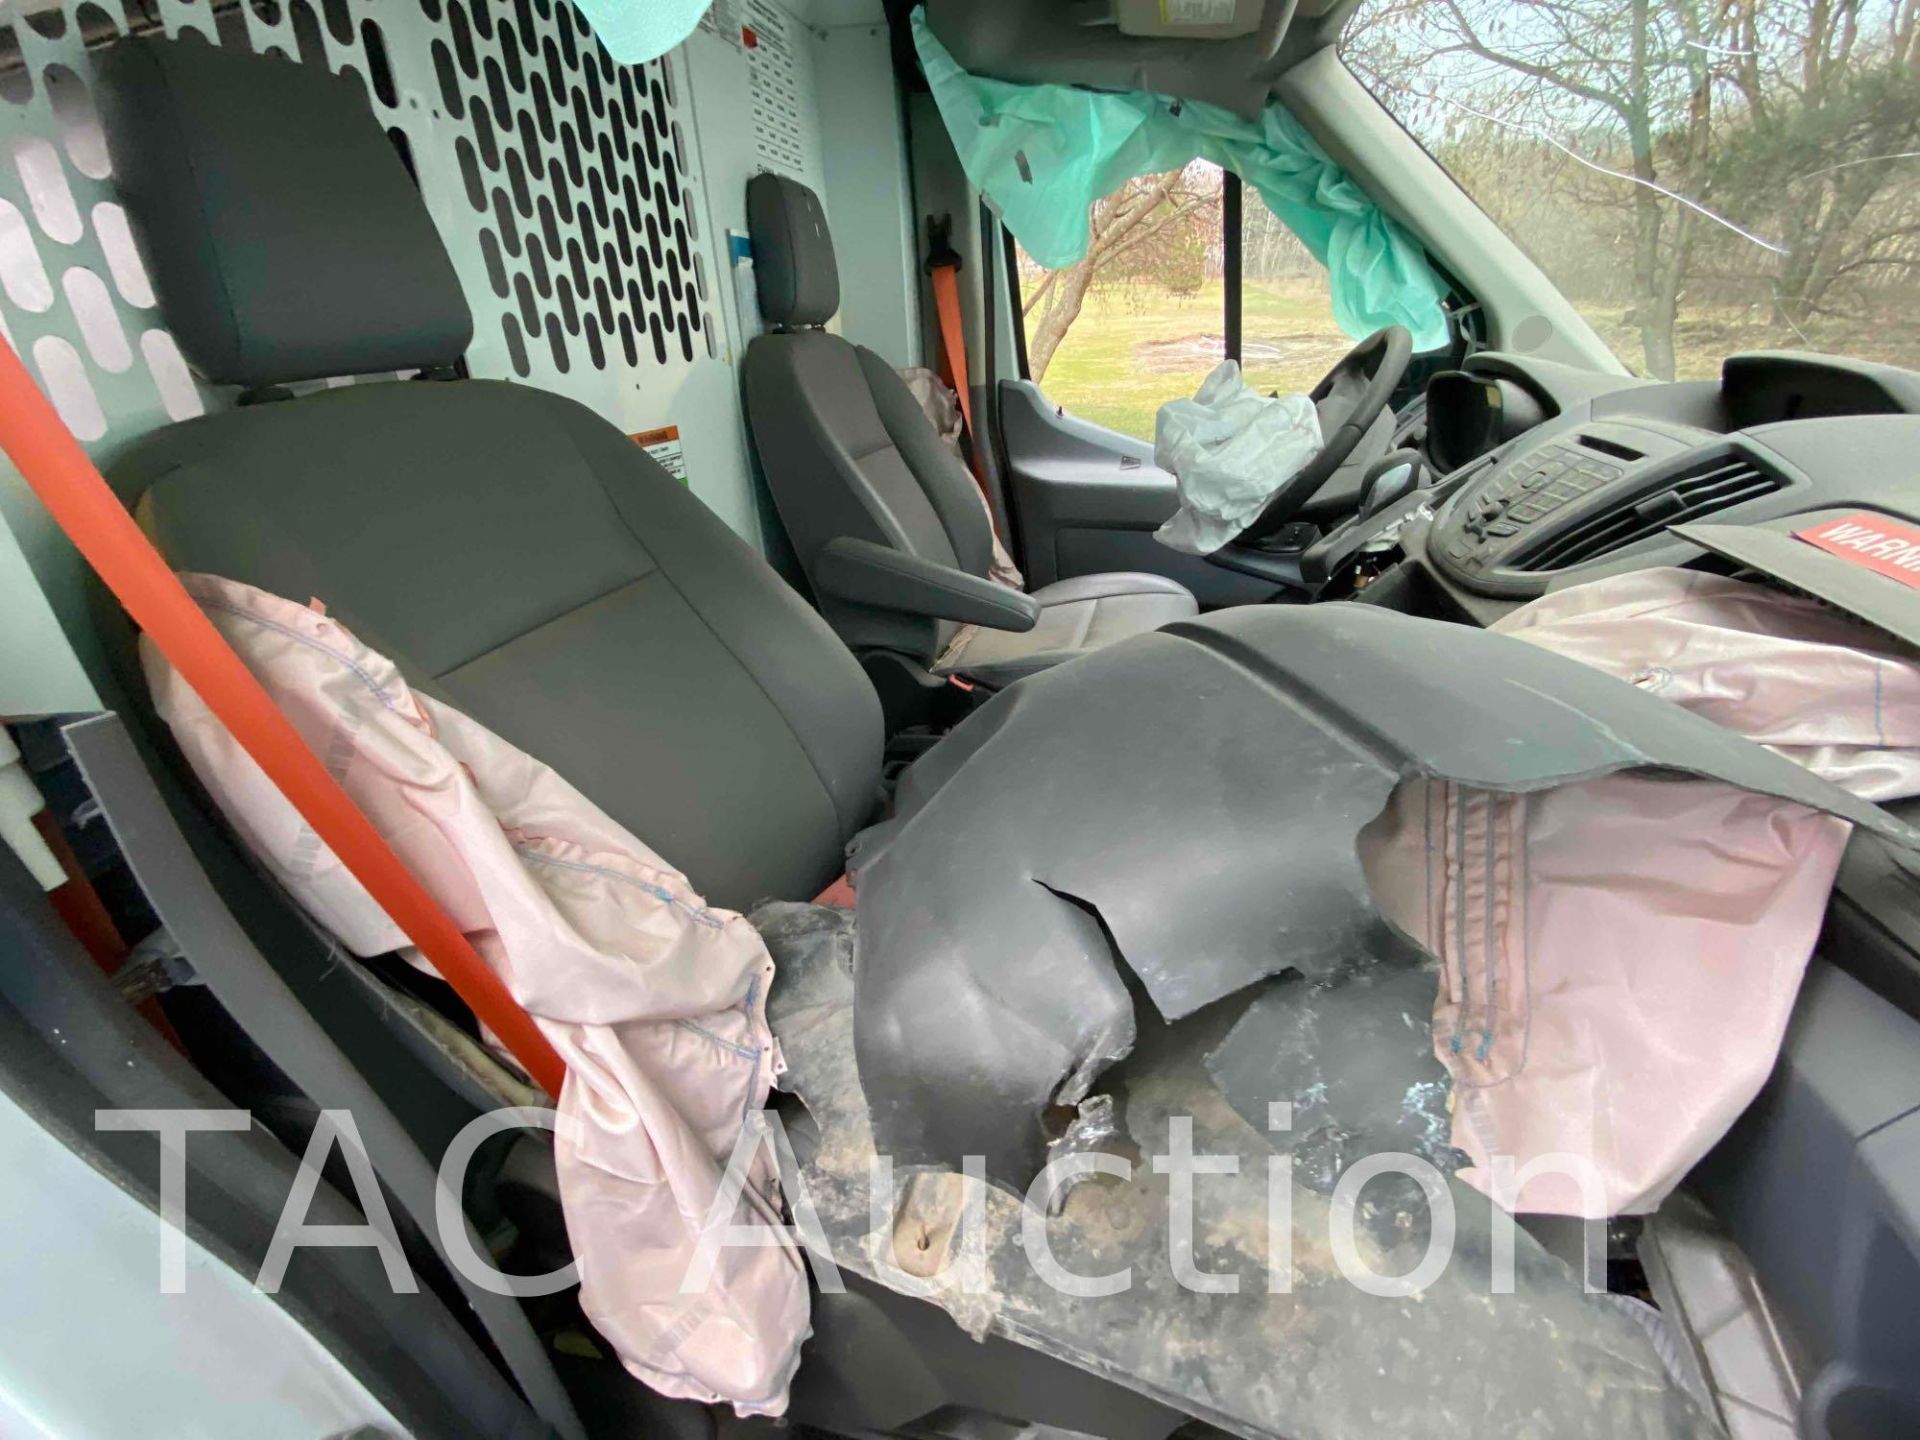 2019 Ford Transit 150 Cargo Van - Image 12 of 35